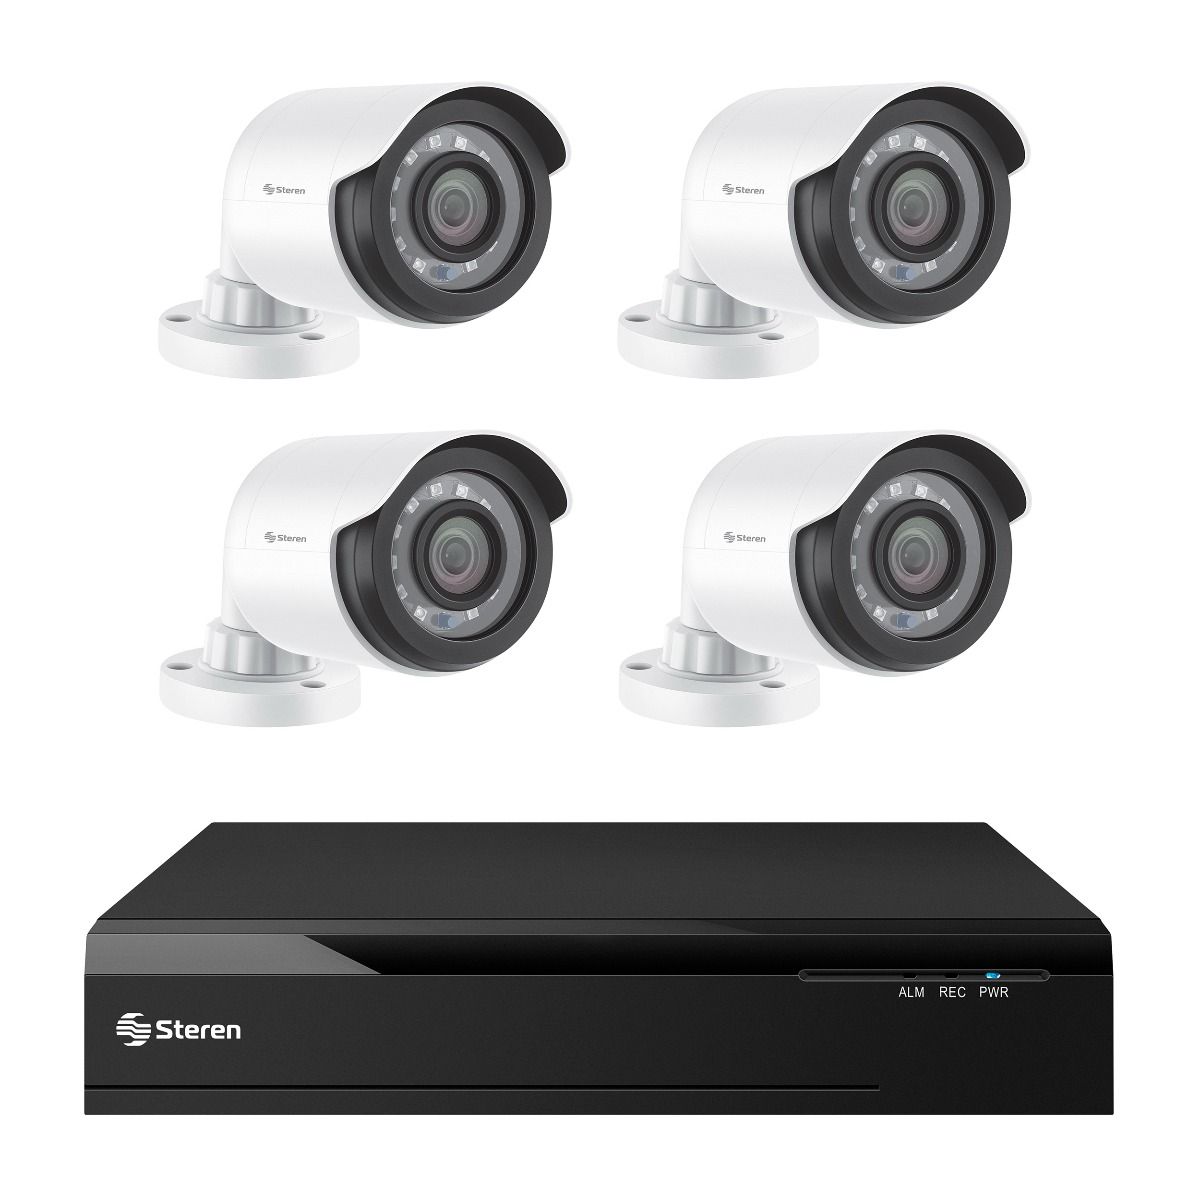 Sistema de seguridad CCTV con DVR pentahíbrido de 8 canales 4 camaras disco duro y monitoreo por Internet.